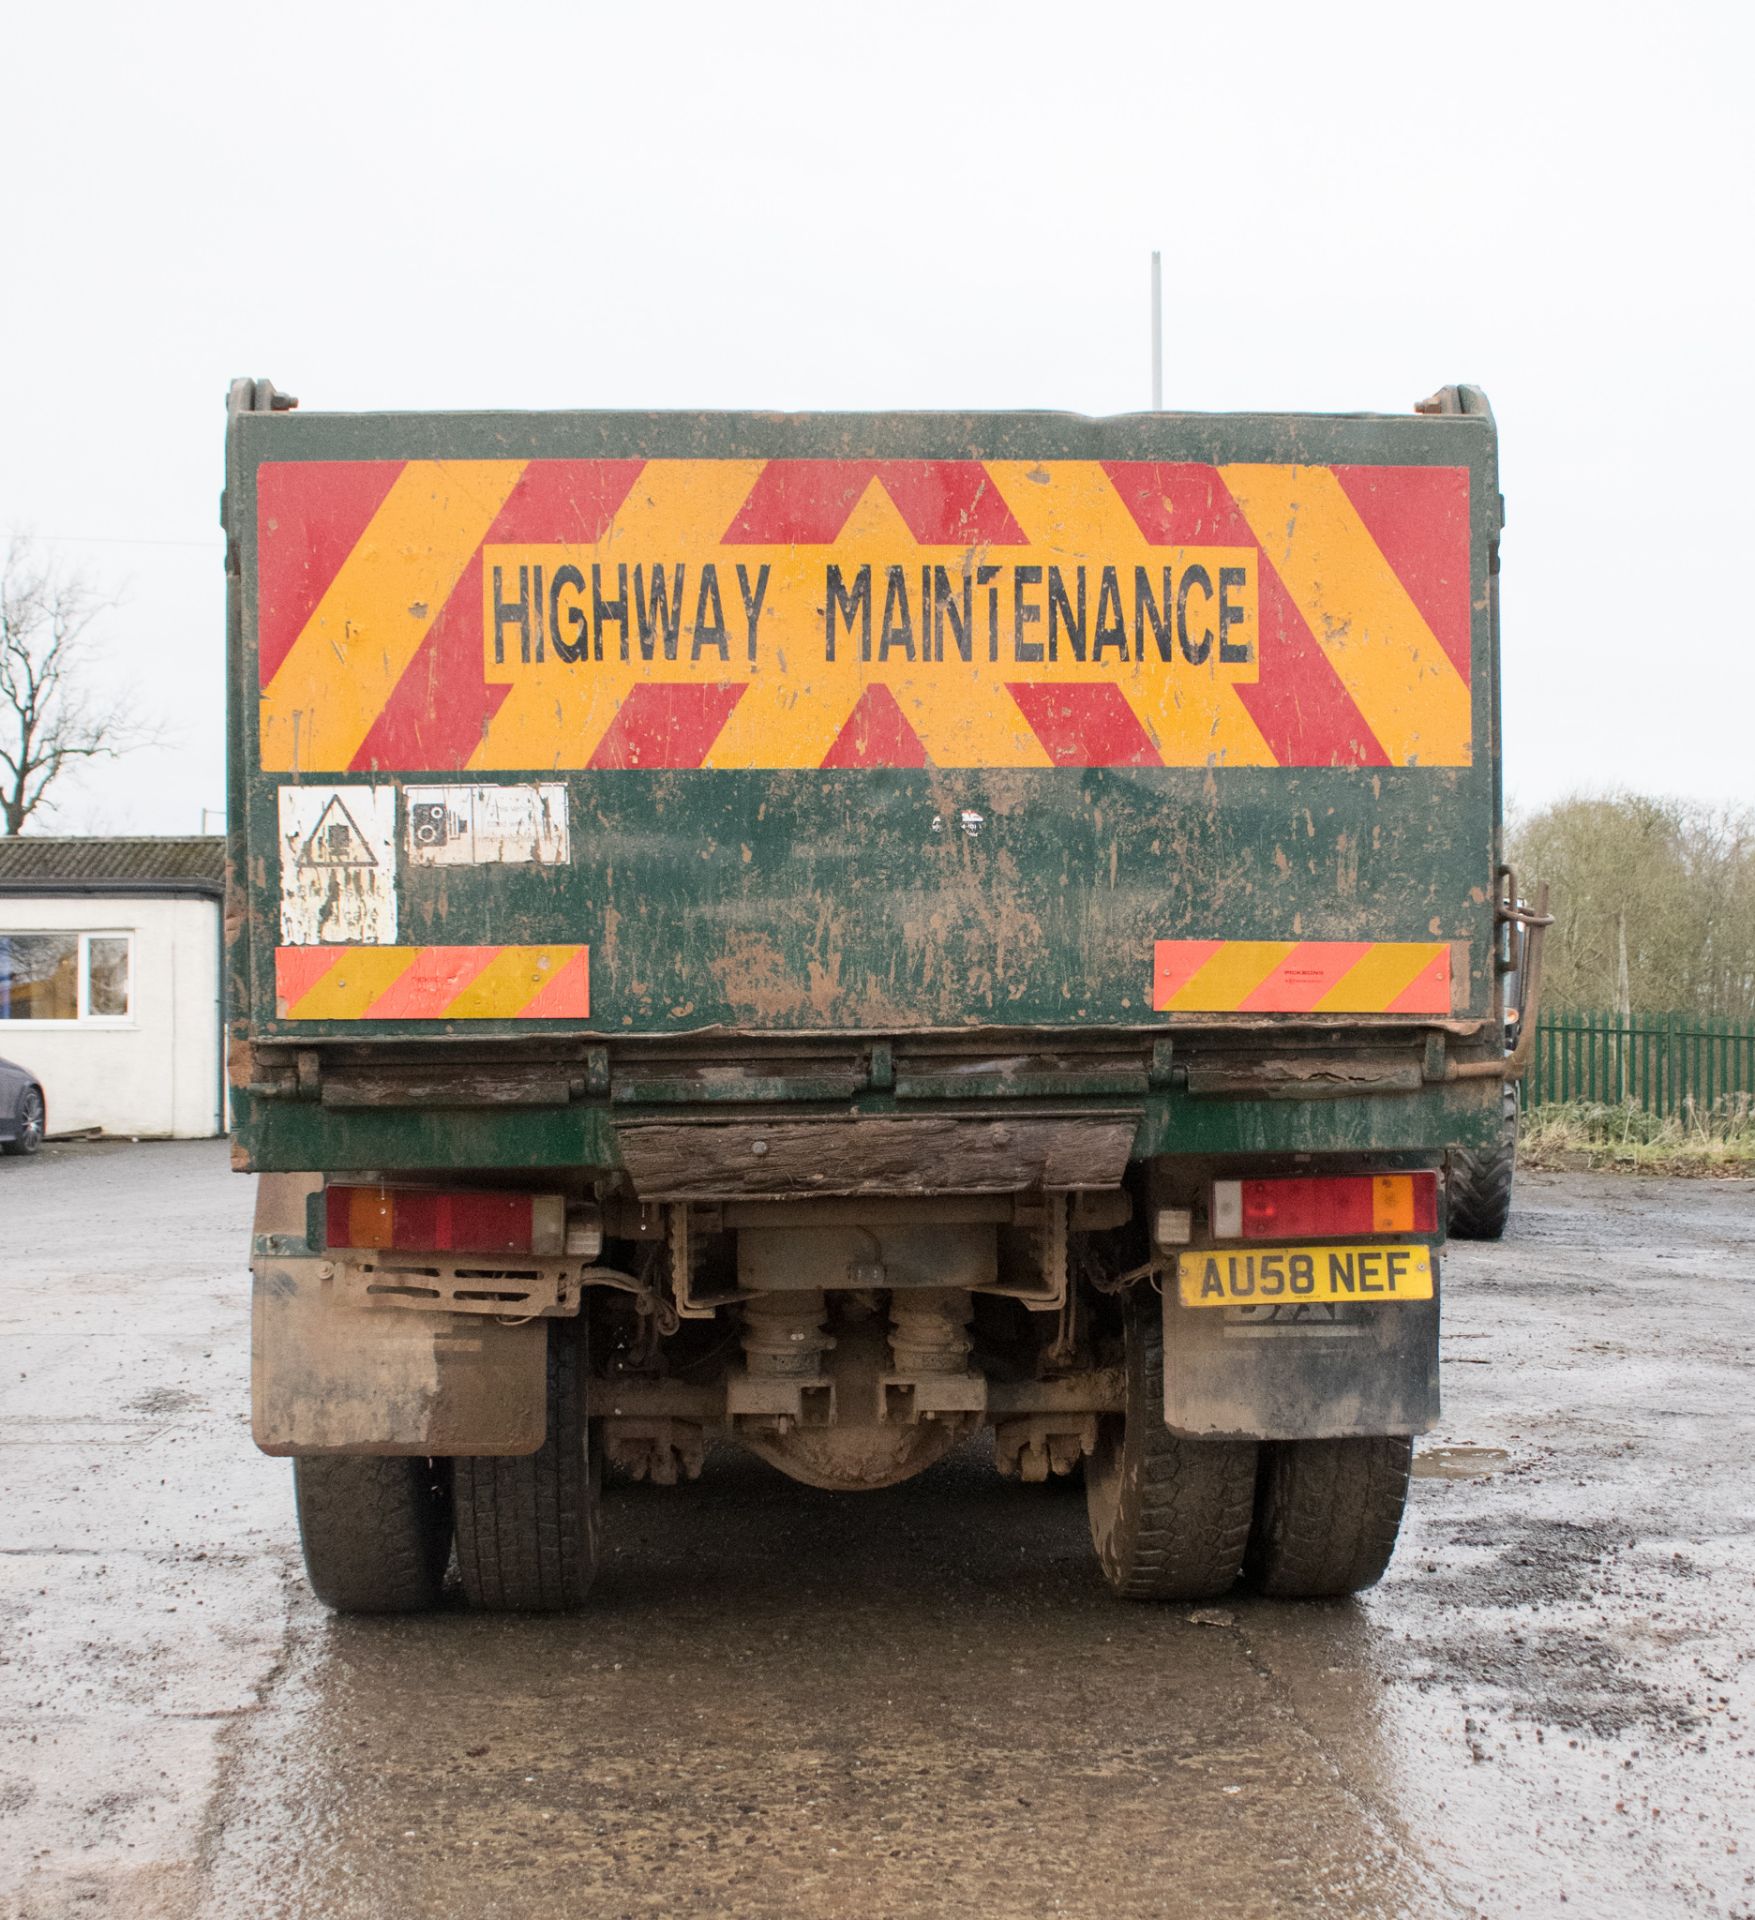 DAF CF 85.340 32 tonne 8 wheel tipper lorry Registration Number: AU58 NEF Date of Registration: 01/ - Image 8 of 12